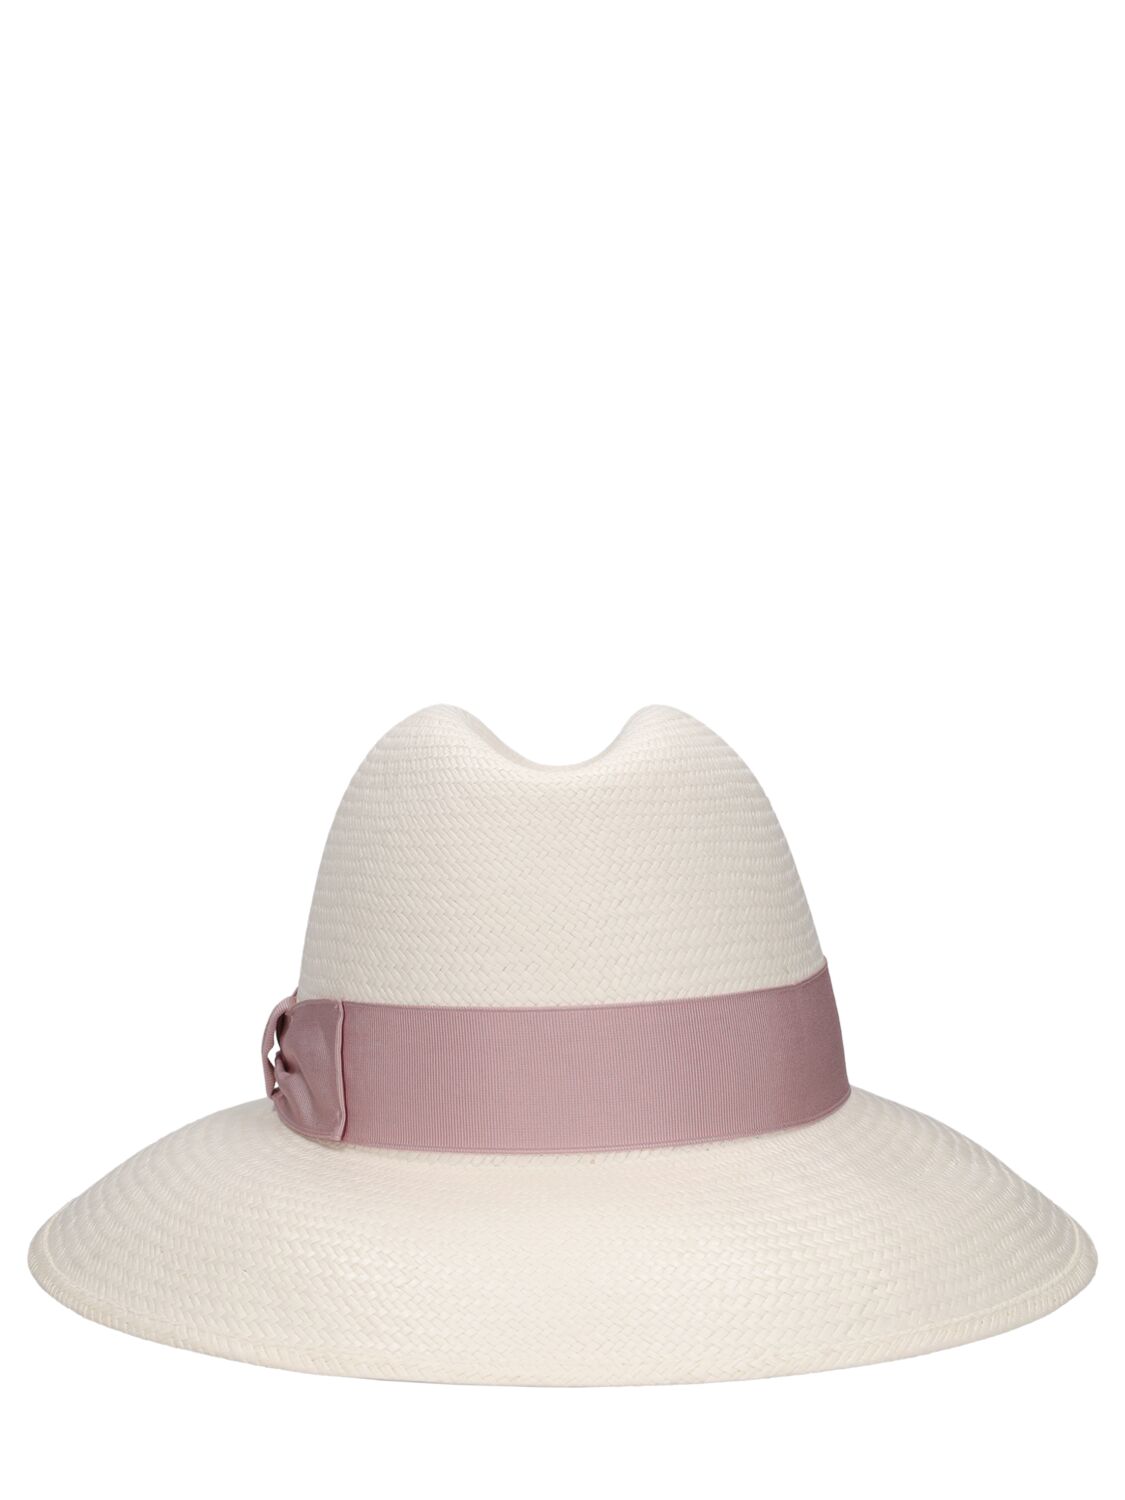 Borsalino Claudette Fine Straw Panama Hat In White,ortensia